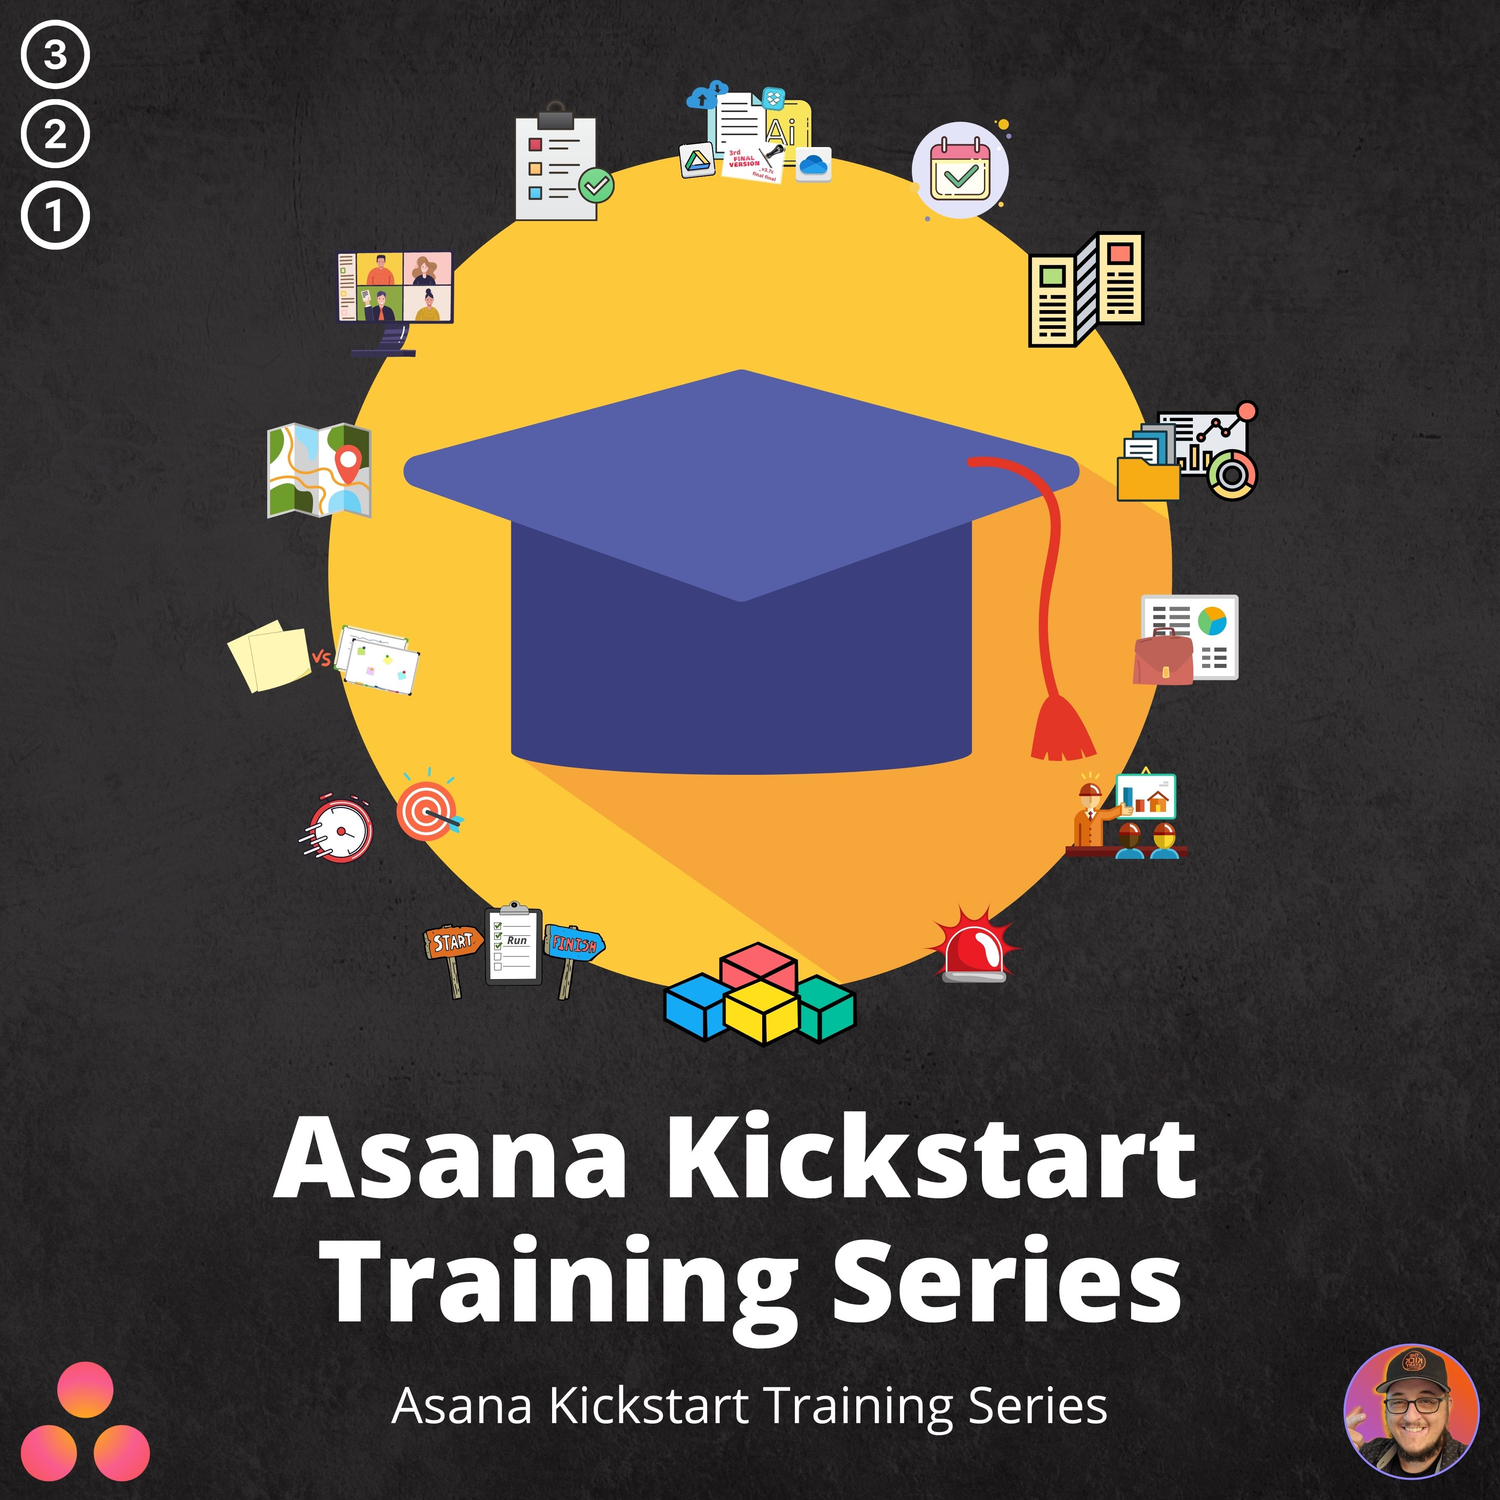 Asana Kickstart Training Series